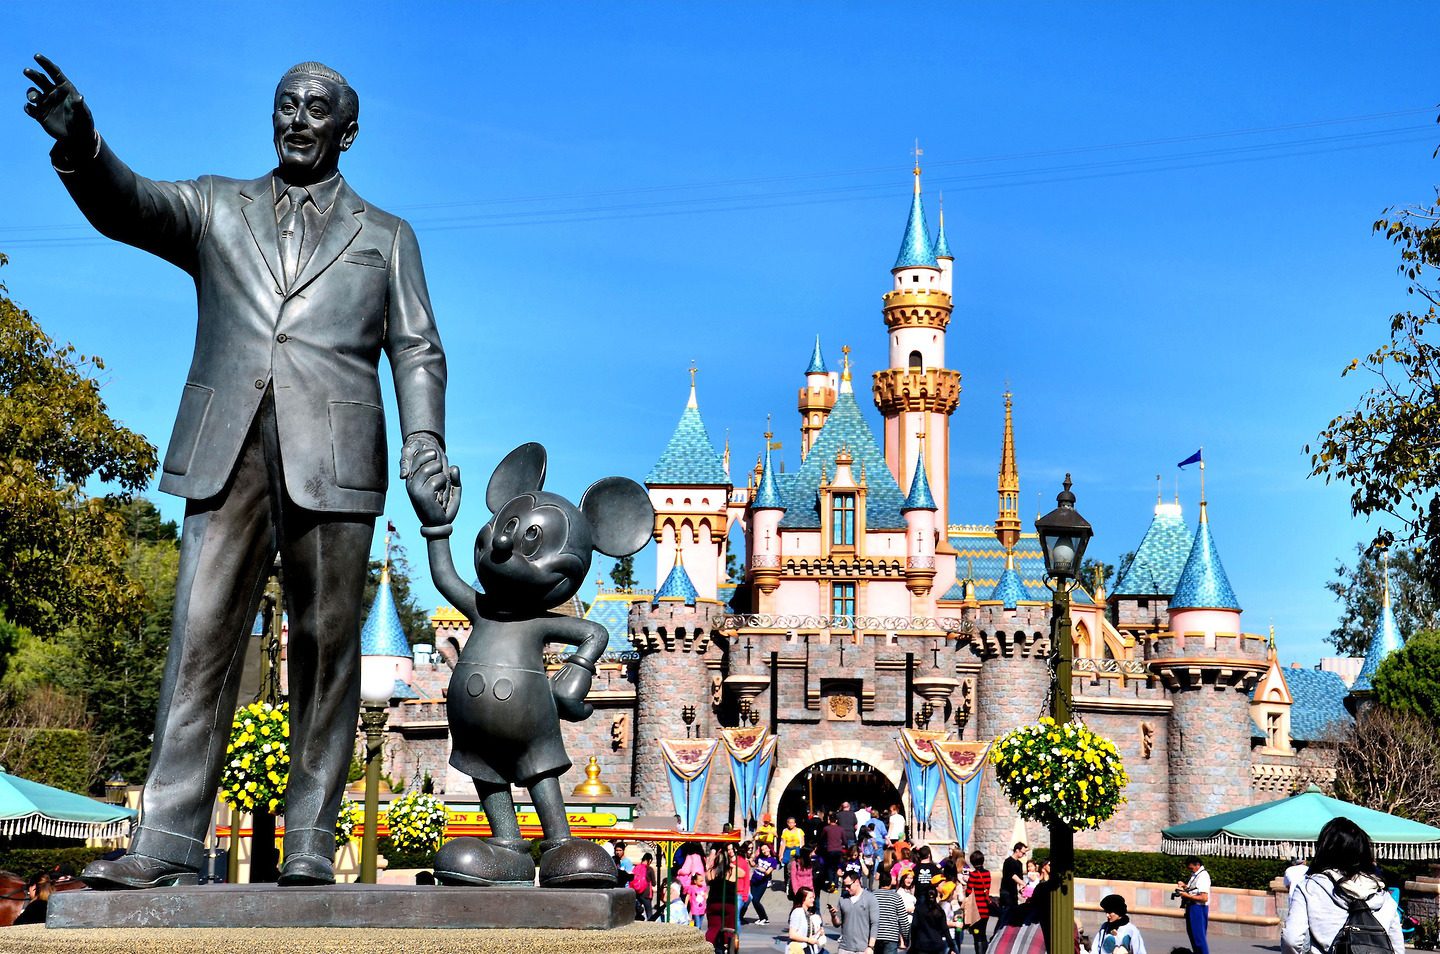 Дисней открытый. Уолт Дисней Диснейленд. Диснейленд (Walt Disney World), Флорида. Статуя Уолта Диснея. Памятник Уолту Диснею и Микки Маусу.